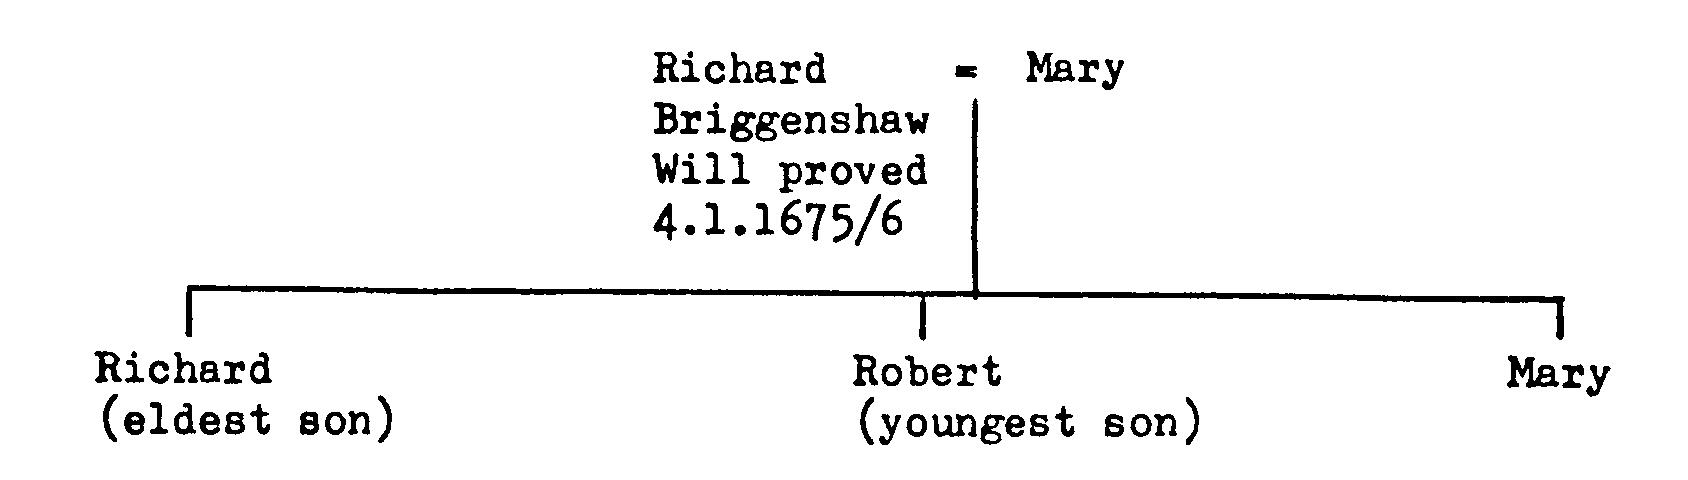 R briginshaw chart2